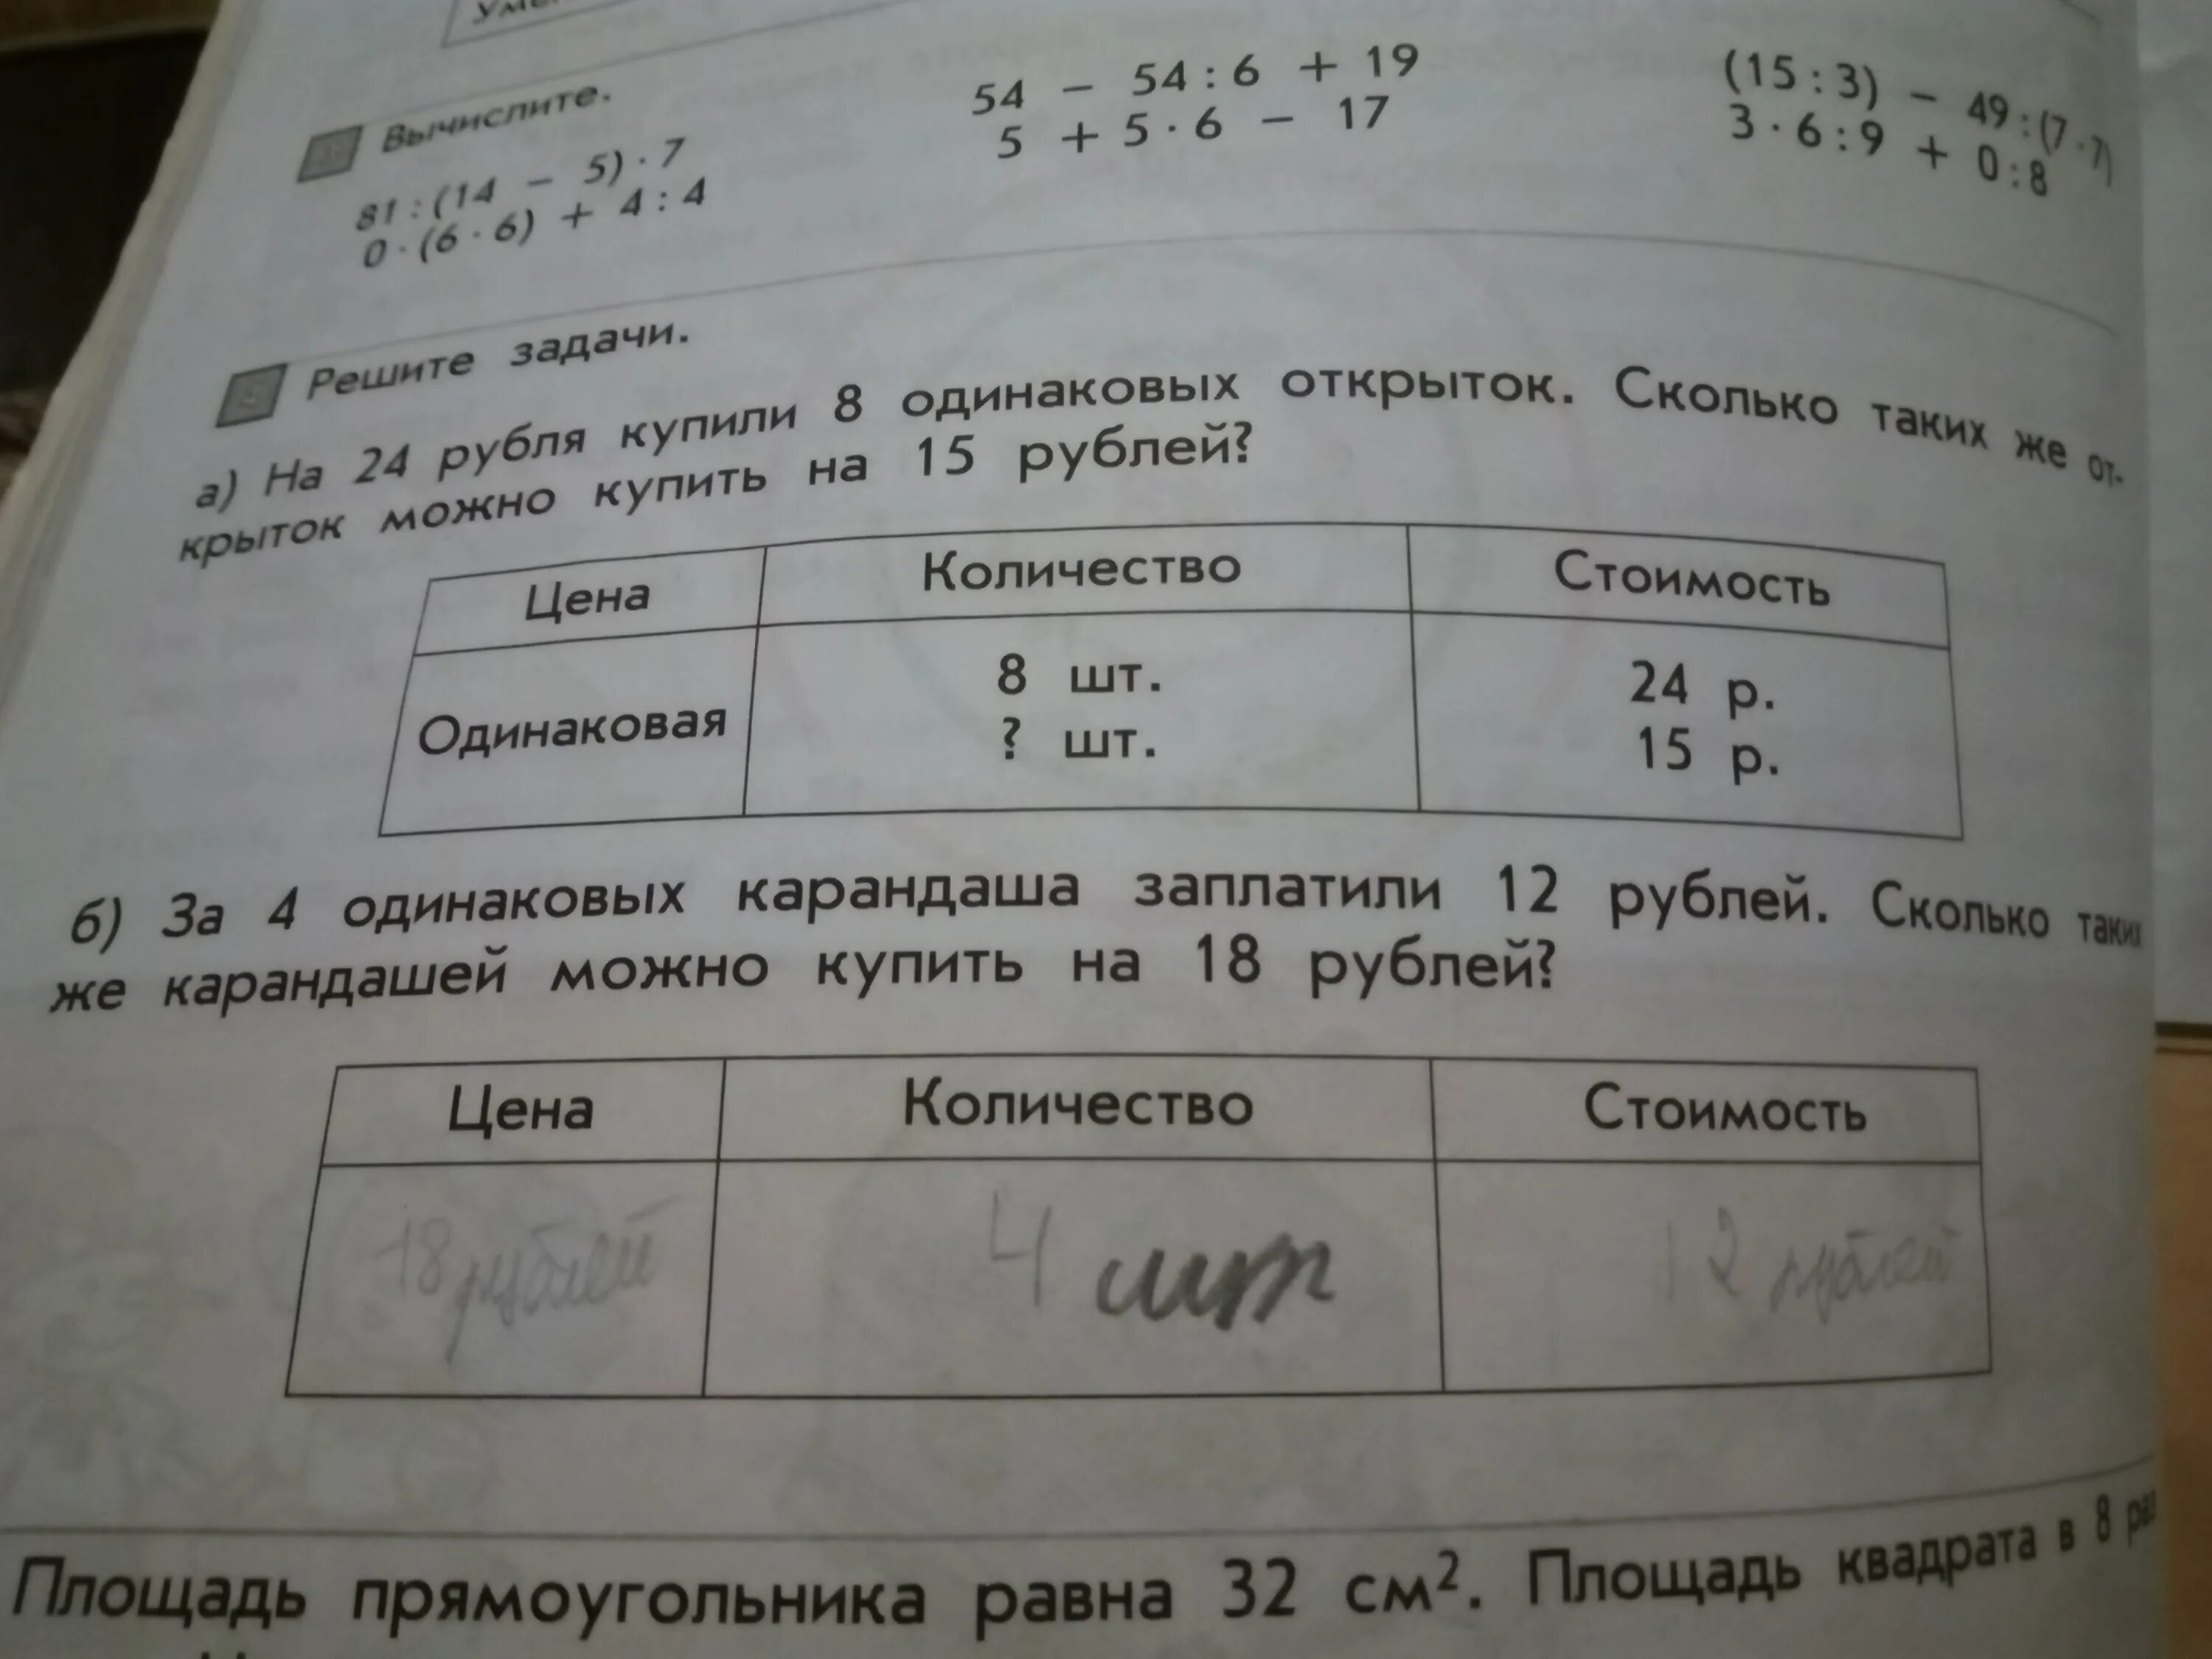 Условия задачи 8 карандашей. Соедини условия задач с их вопросами.. Решение задачи 8 карандашей стоят 24 рубля. Задача про рубль.